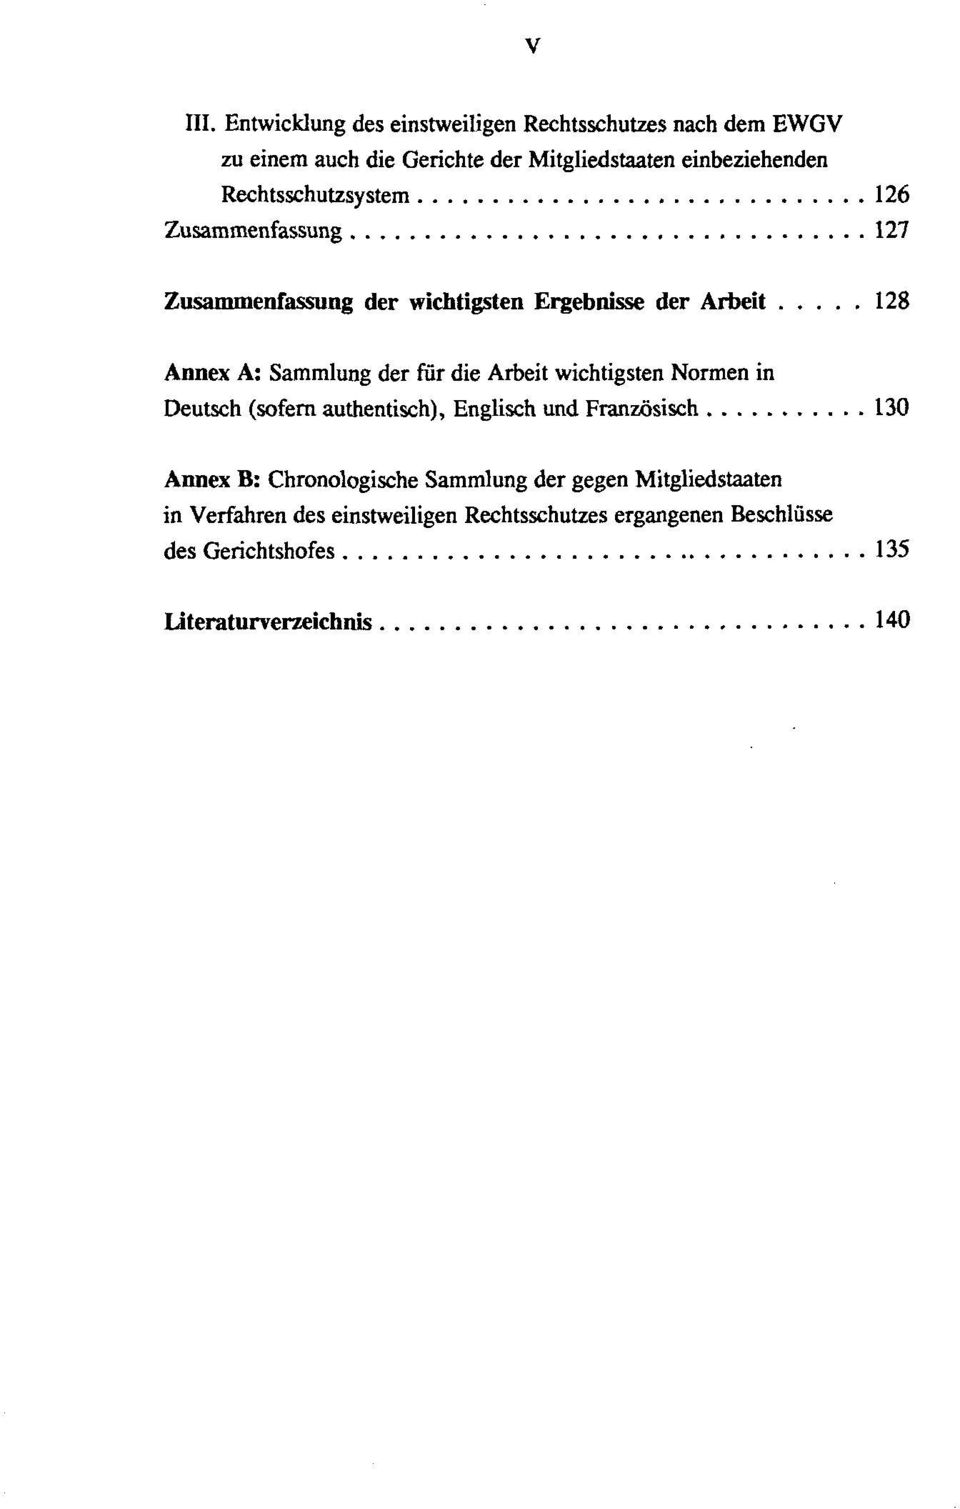 Rechtsschutzsystem 126 Zusammenfassung 127 Zusammenfassung der wichtigsten Ergebnisse der Arbeit 128 Annex A: Sammlung der für